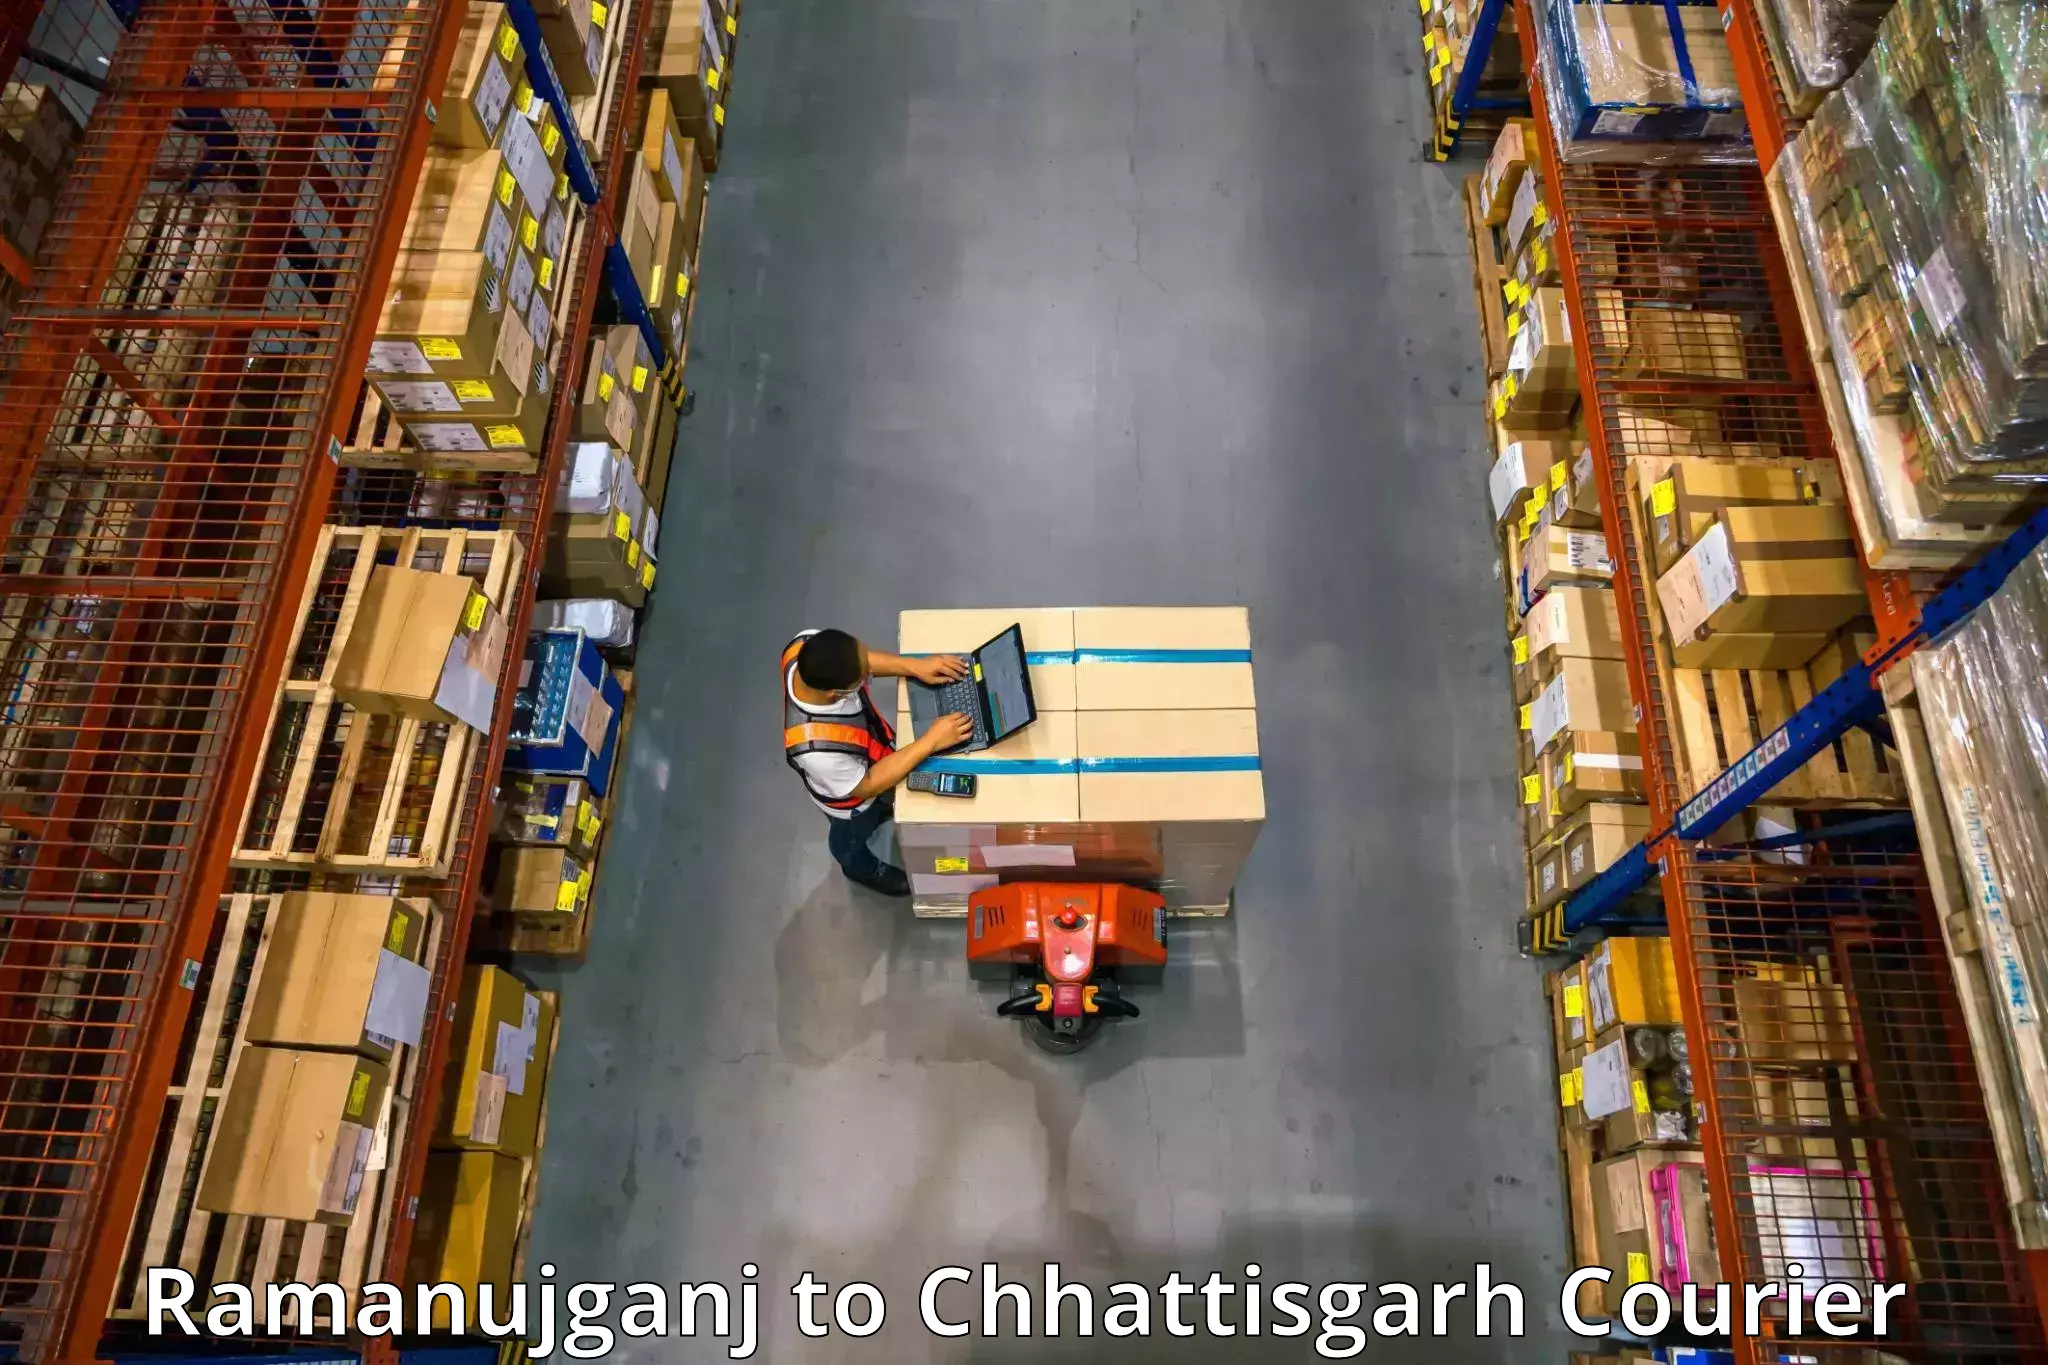 Furniture moving experts Ramanujganj to Bilaspur